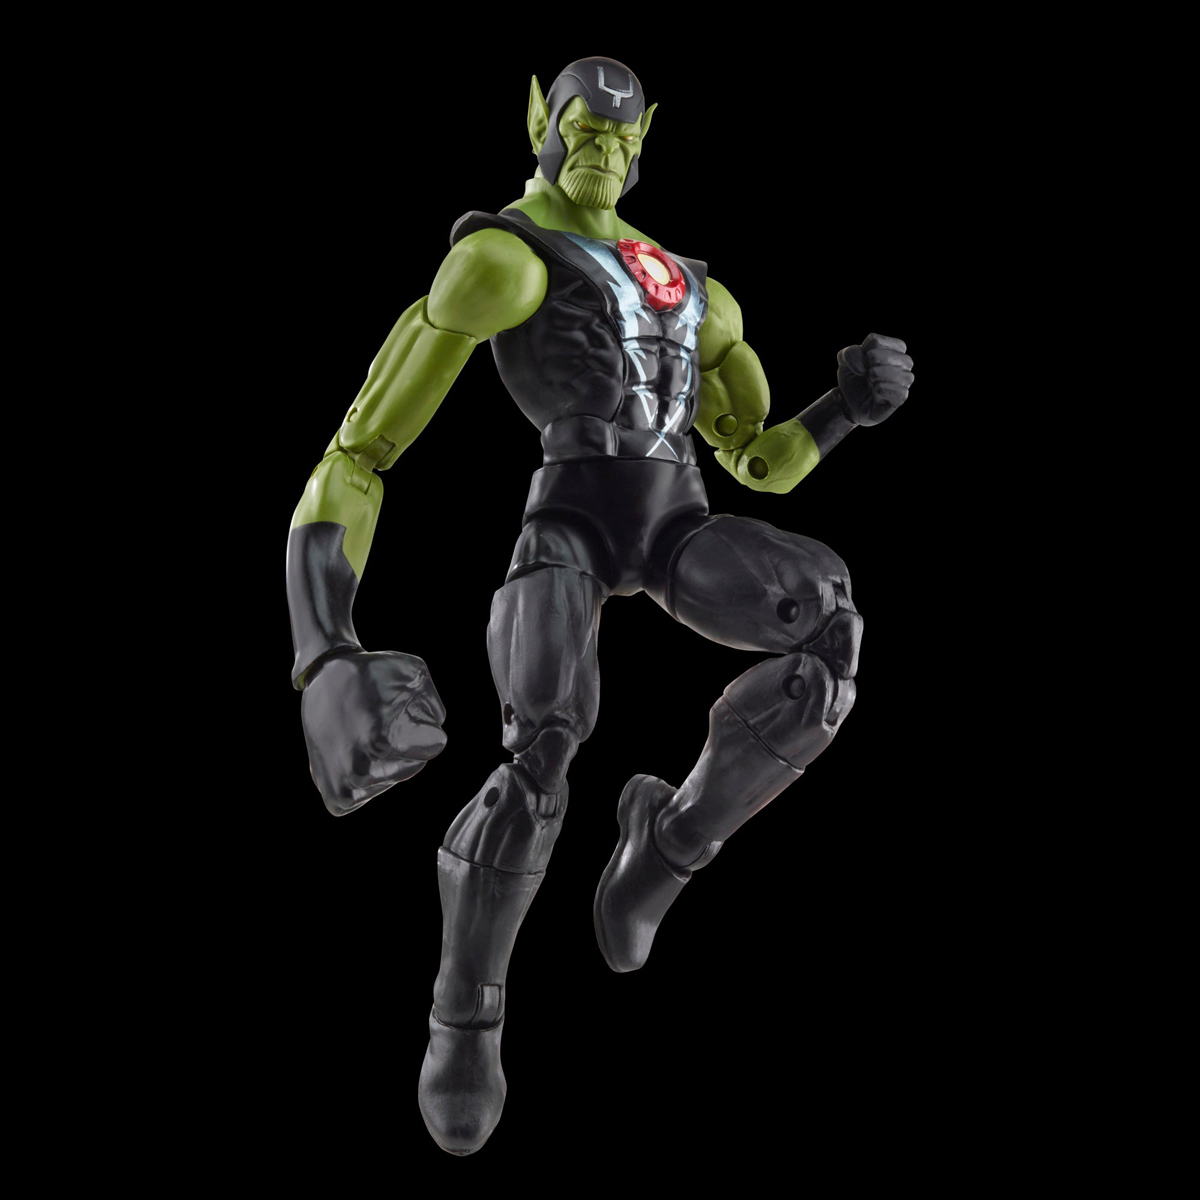 Marvel-Legends-Skrull-Queen-and-Super-Skrull-Action-Figures-13